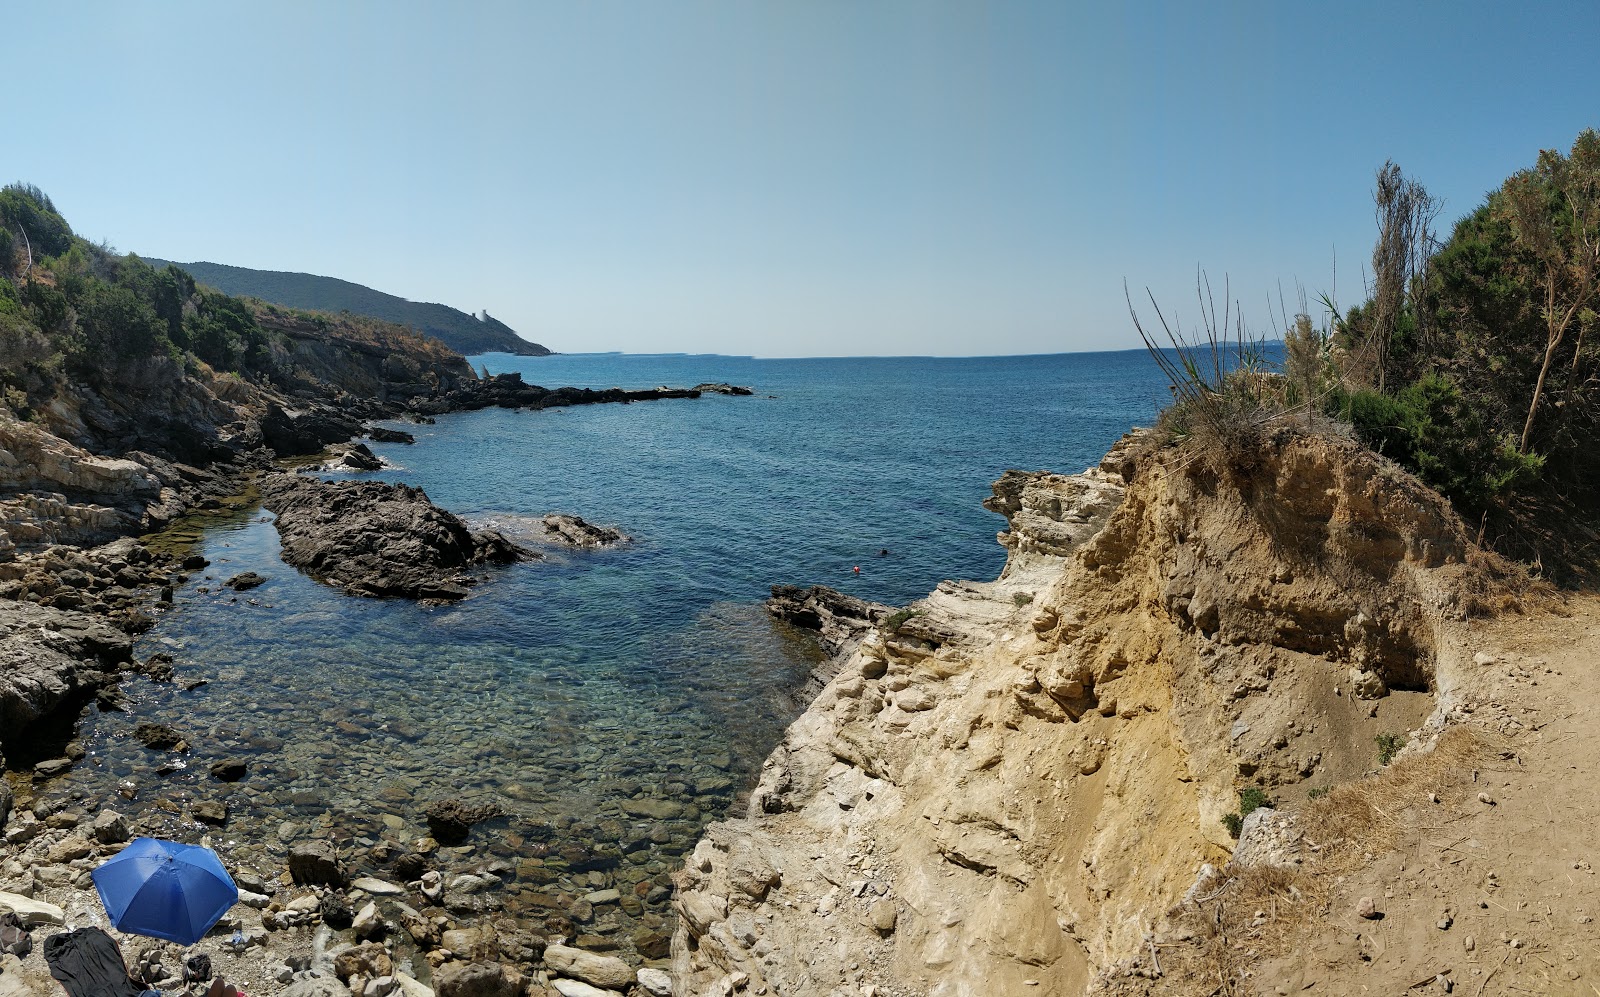 Zdjęcie Mar Morto beach położony w naturalnym obszarze